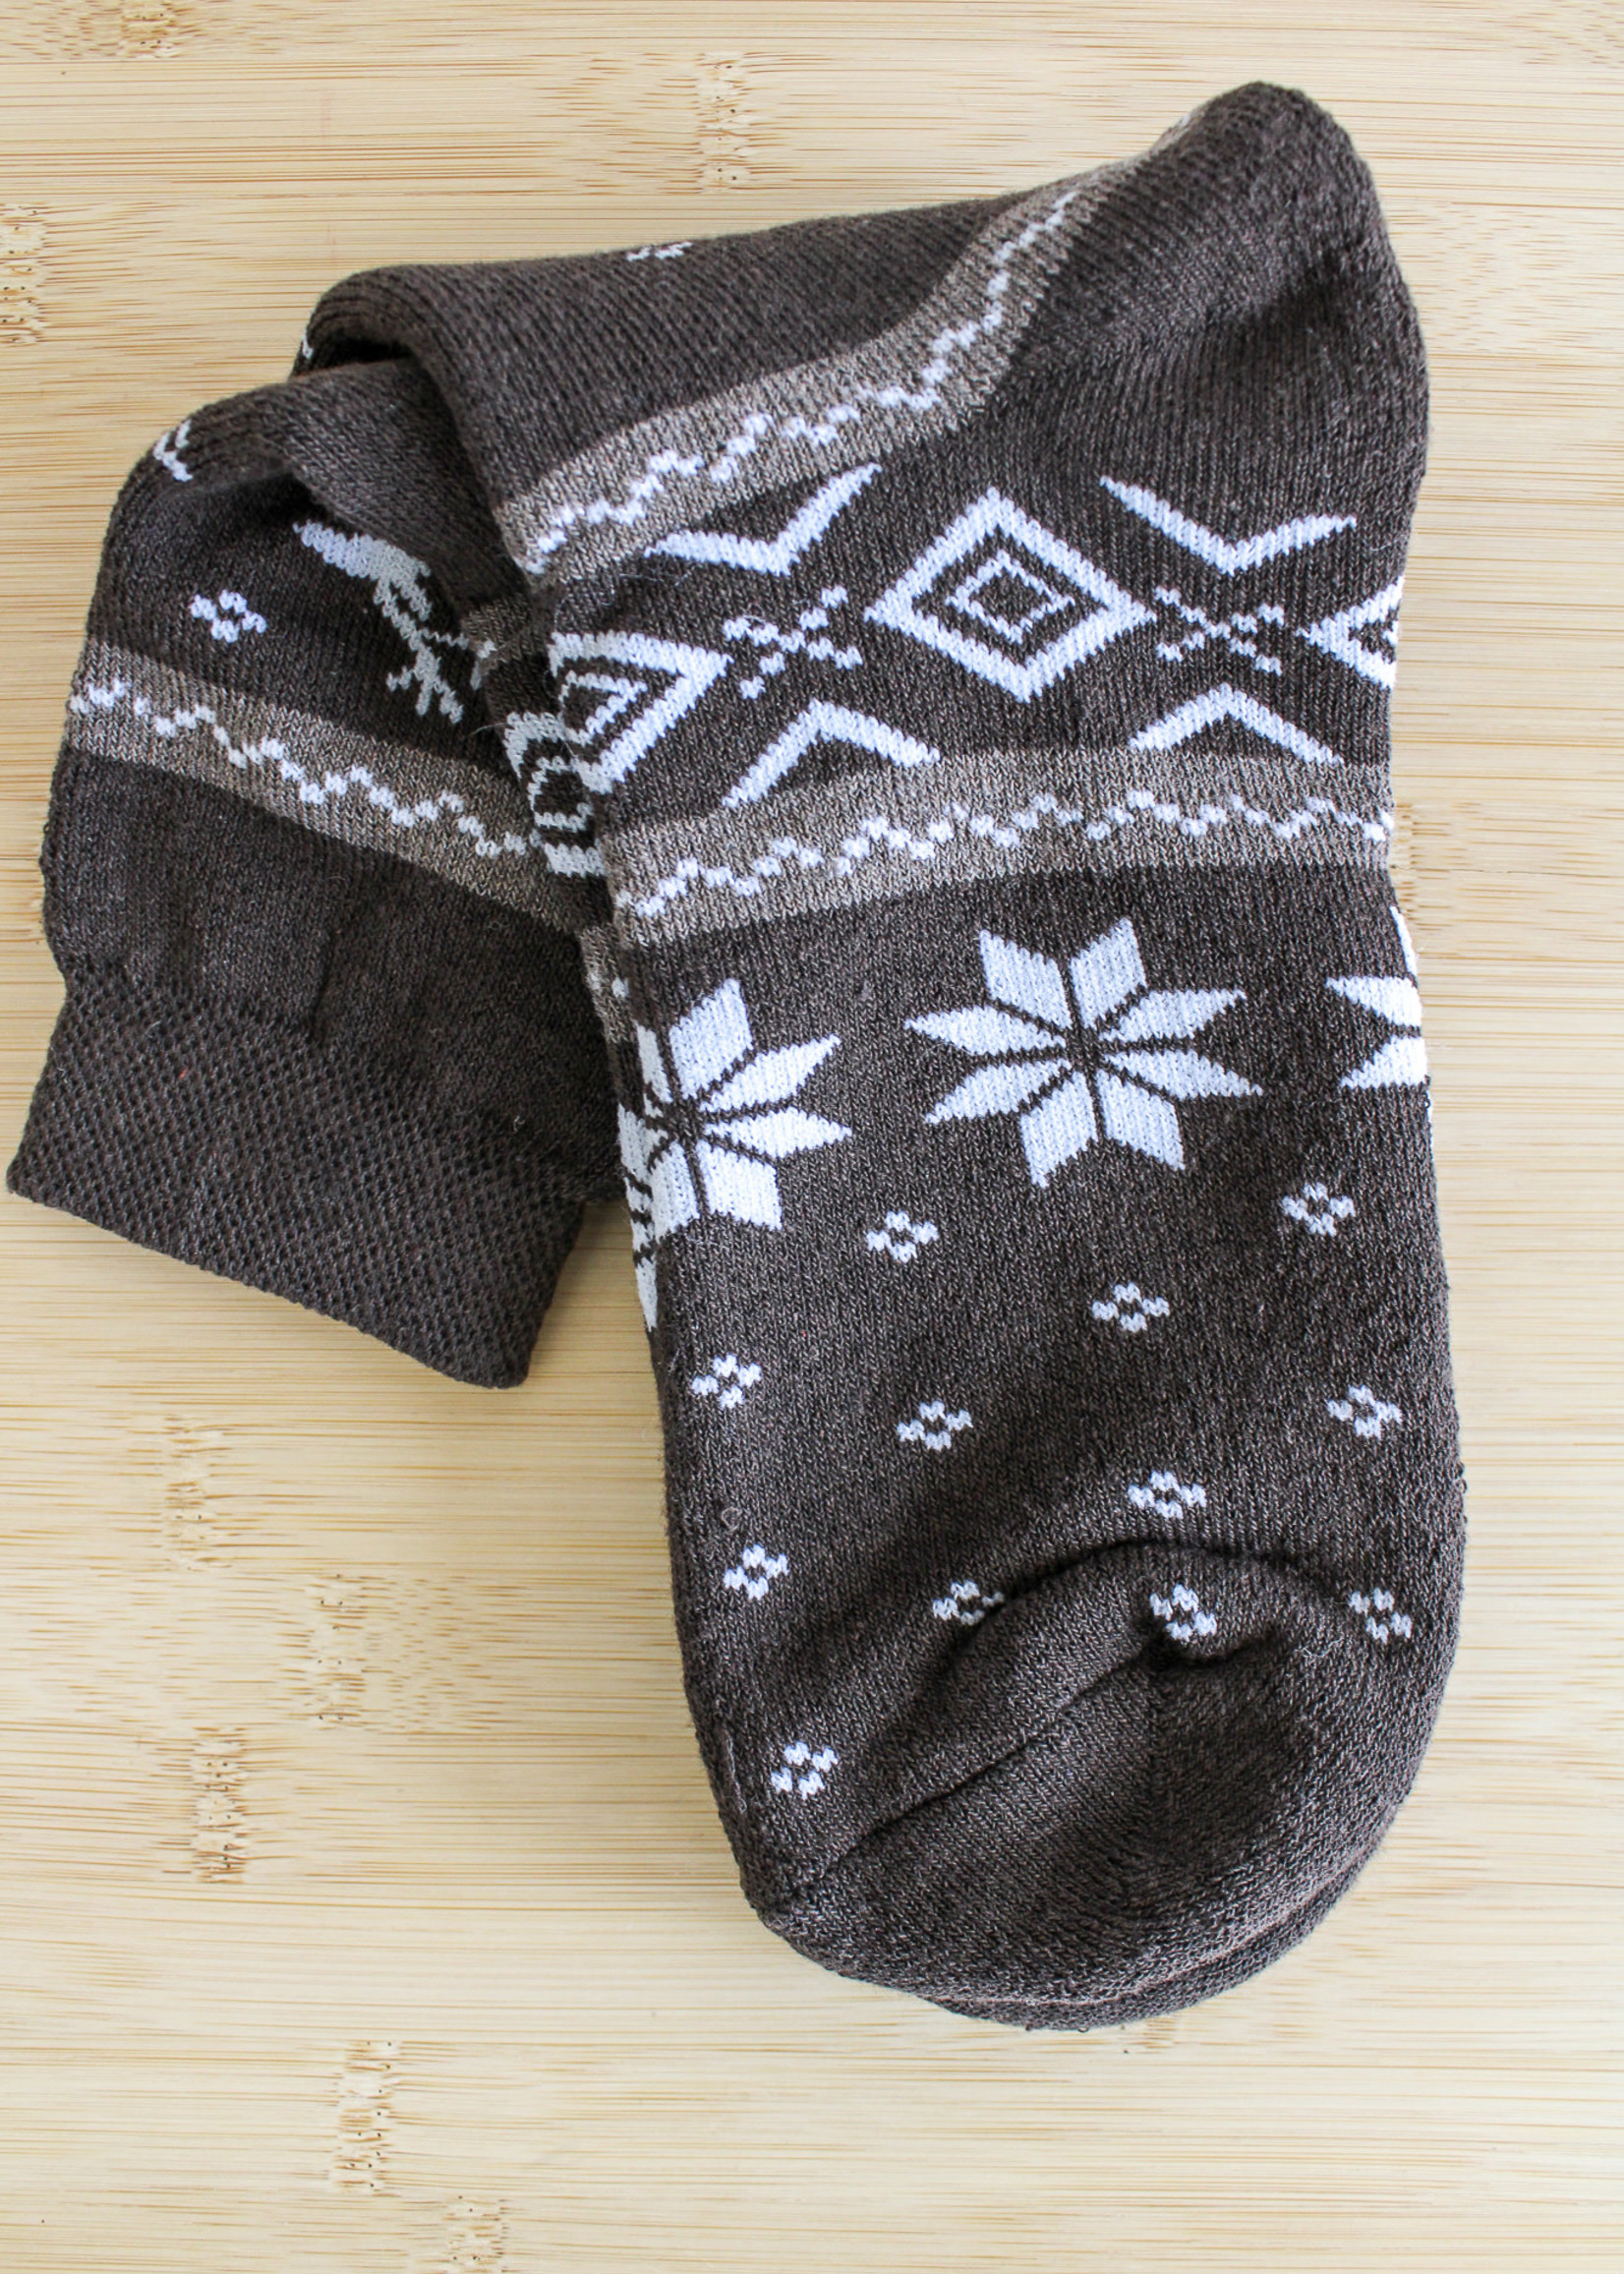 APPAREL - (M) Brown Socks with Deer Medium